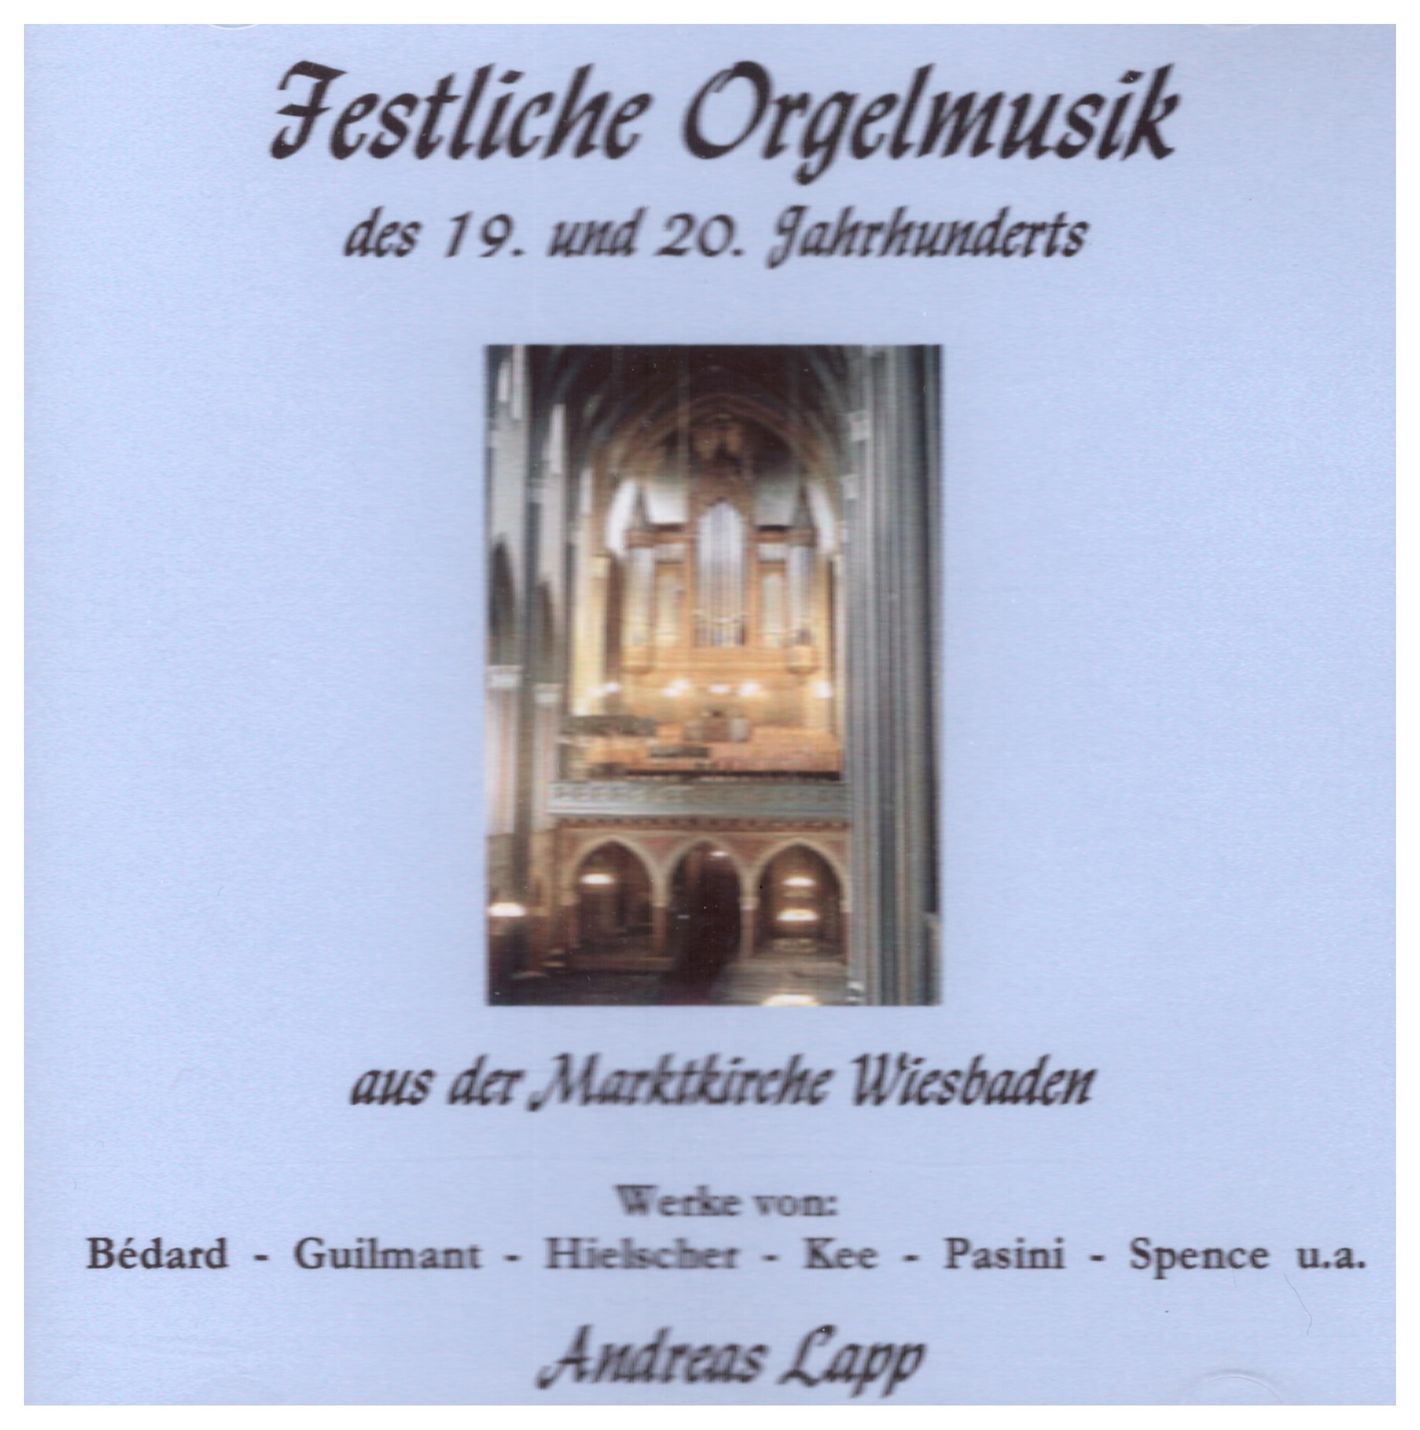 Festliche Orgelmusik